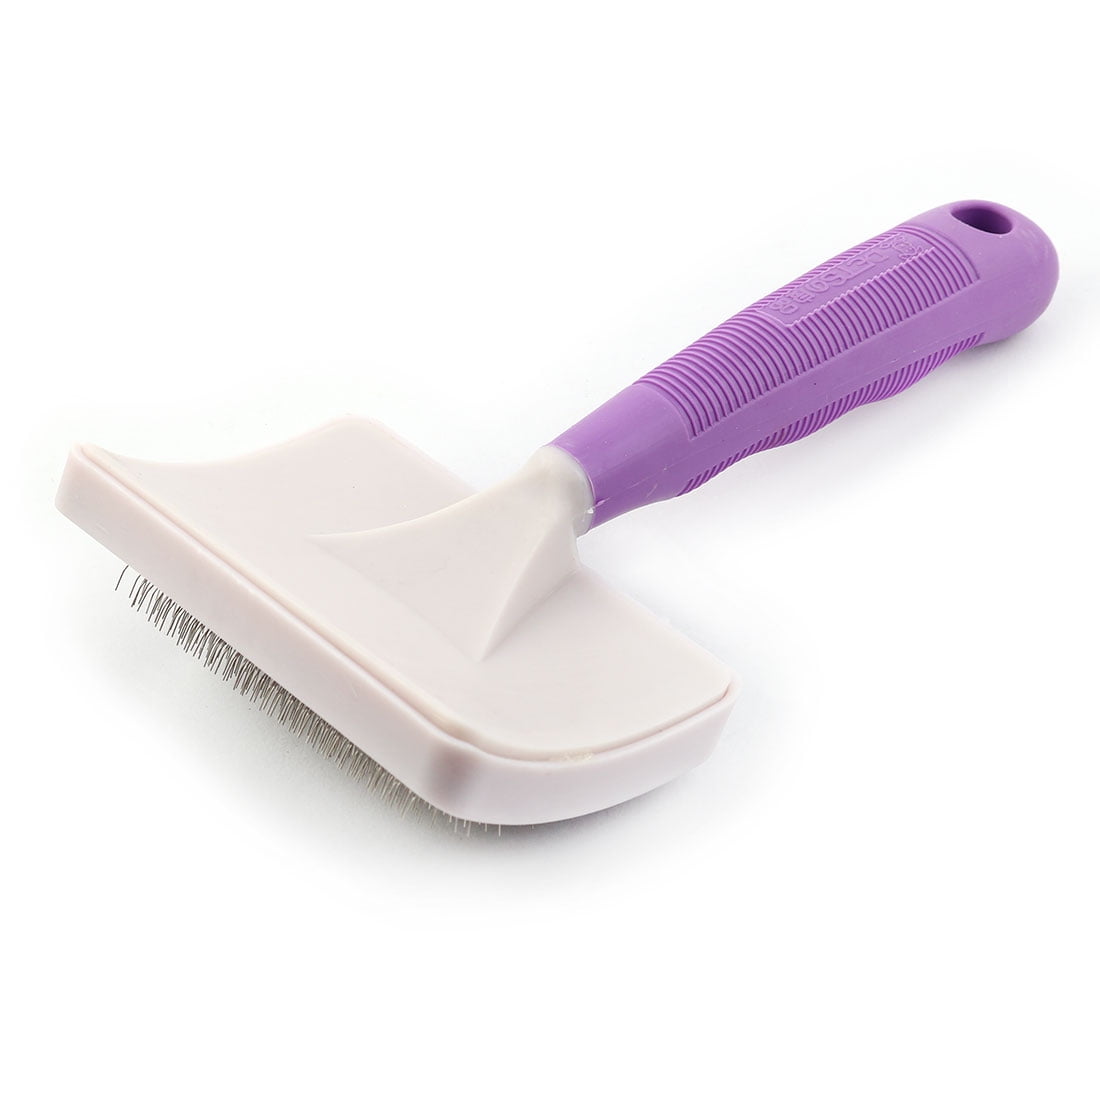 purple cat brush